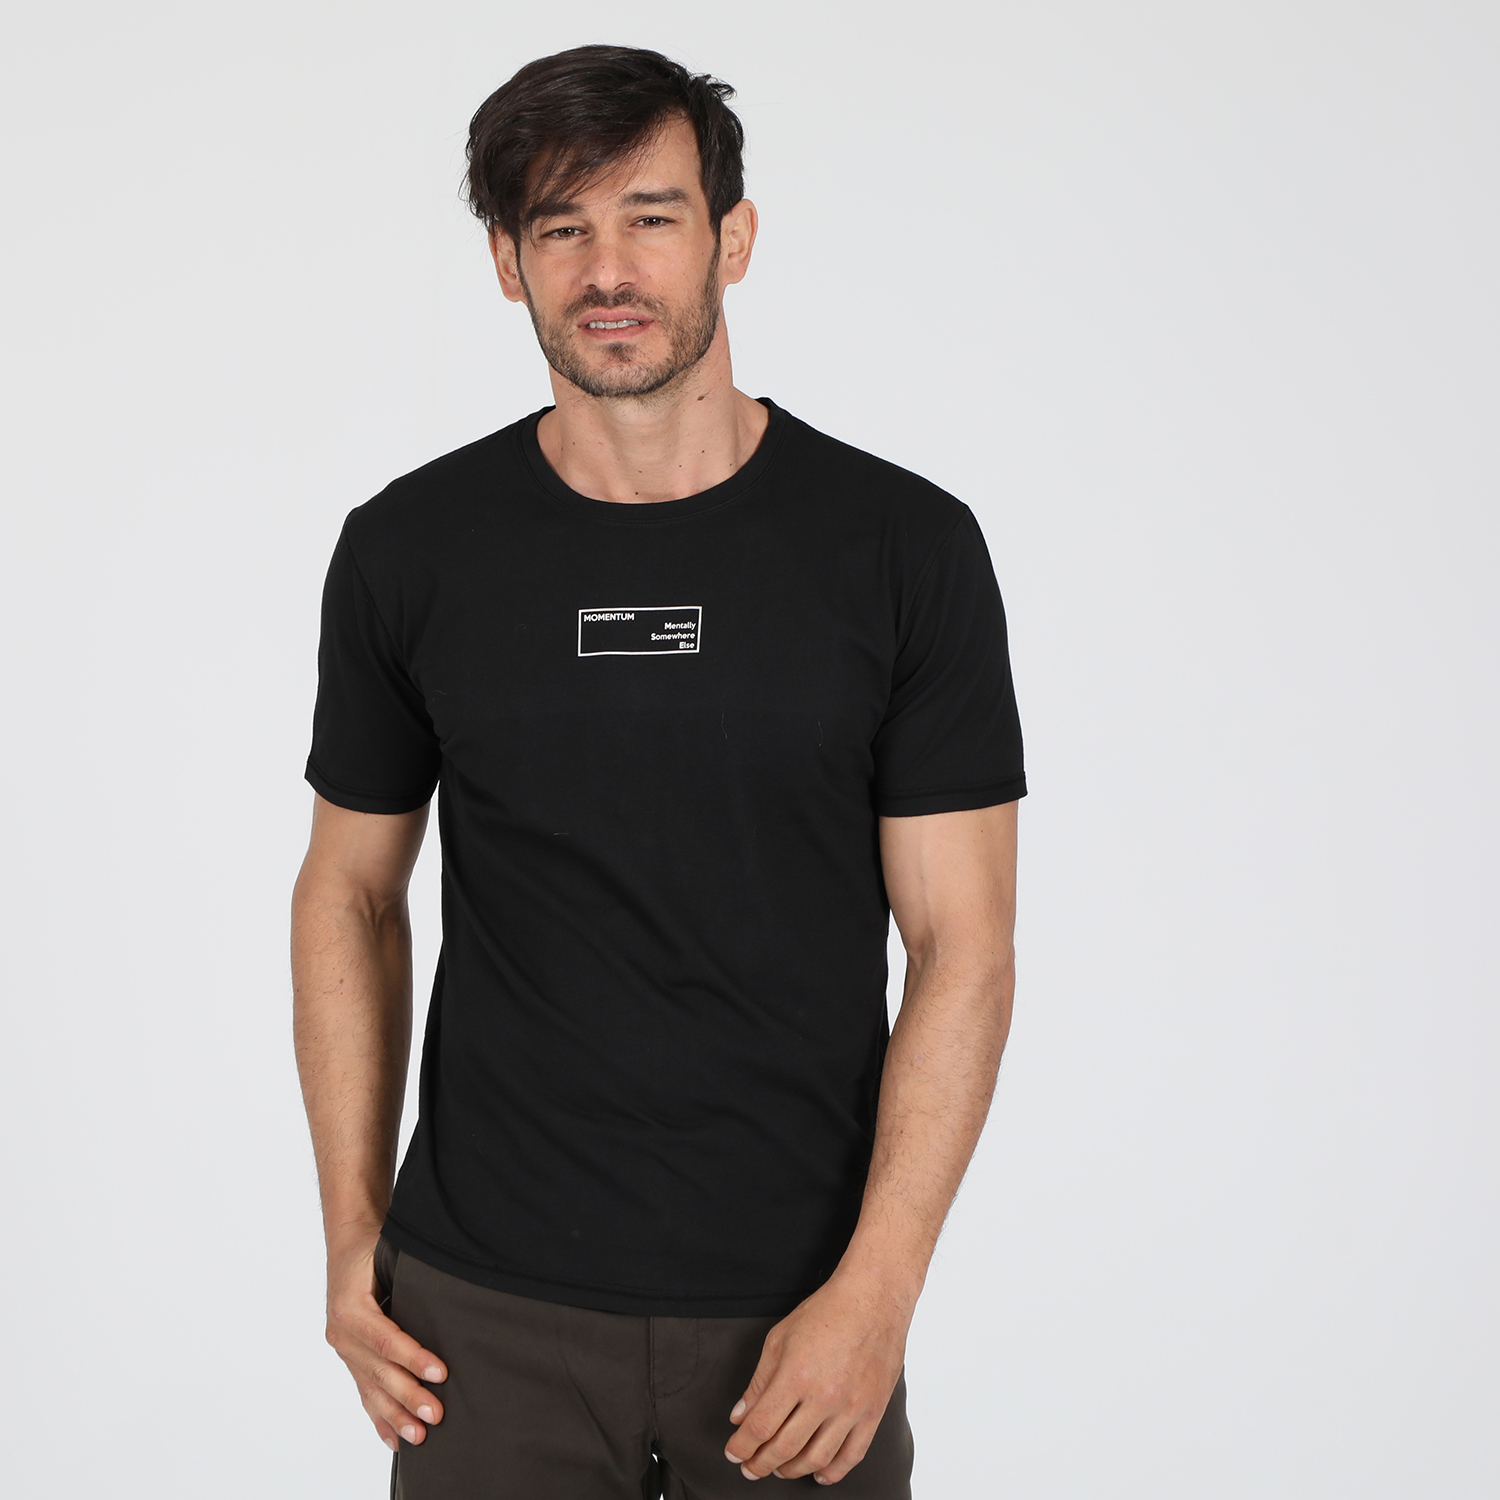 Ανδρικά/Ρούχα/Μπλούζες/Κοντομάνικες DIRTY LAUNDRY - Ανδρικό t-shirt DIRTY LAUNDRY MOMENTUM μαύρο